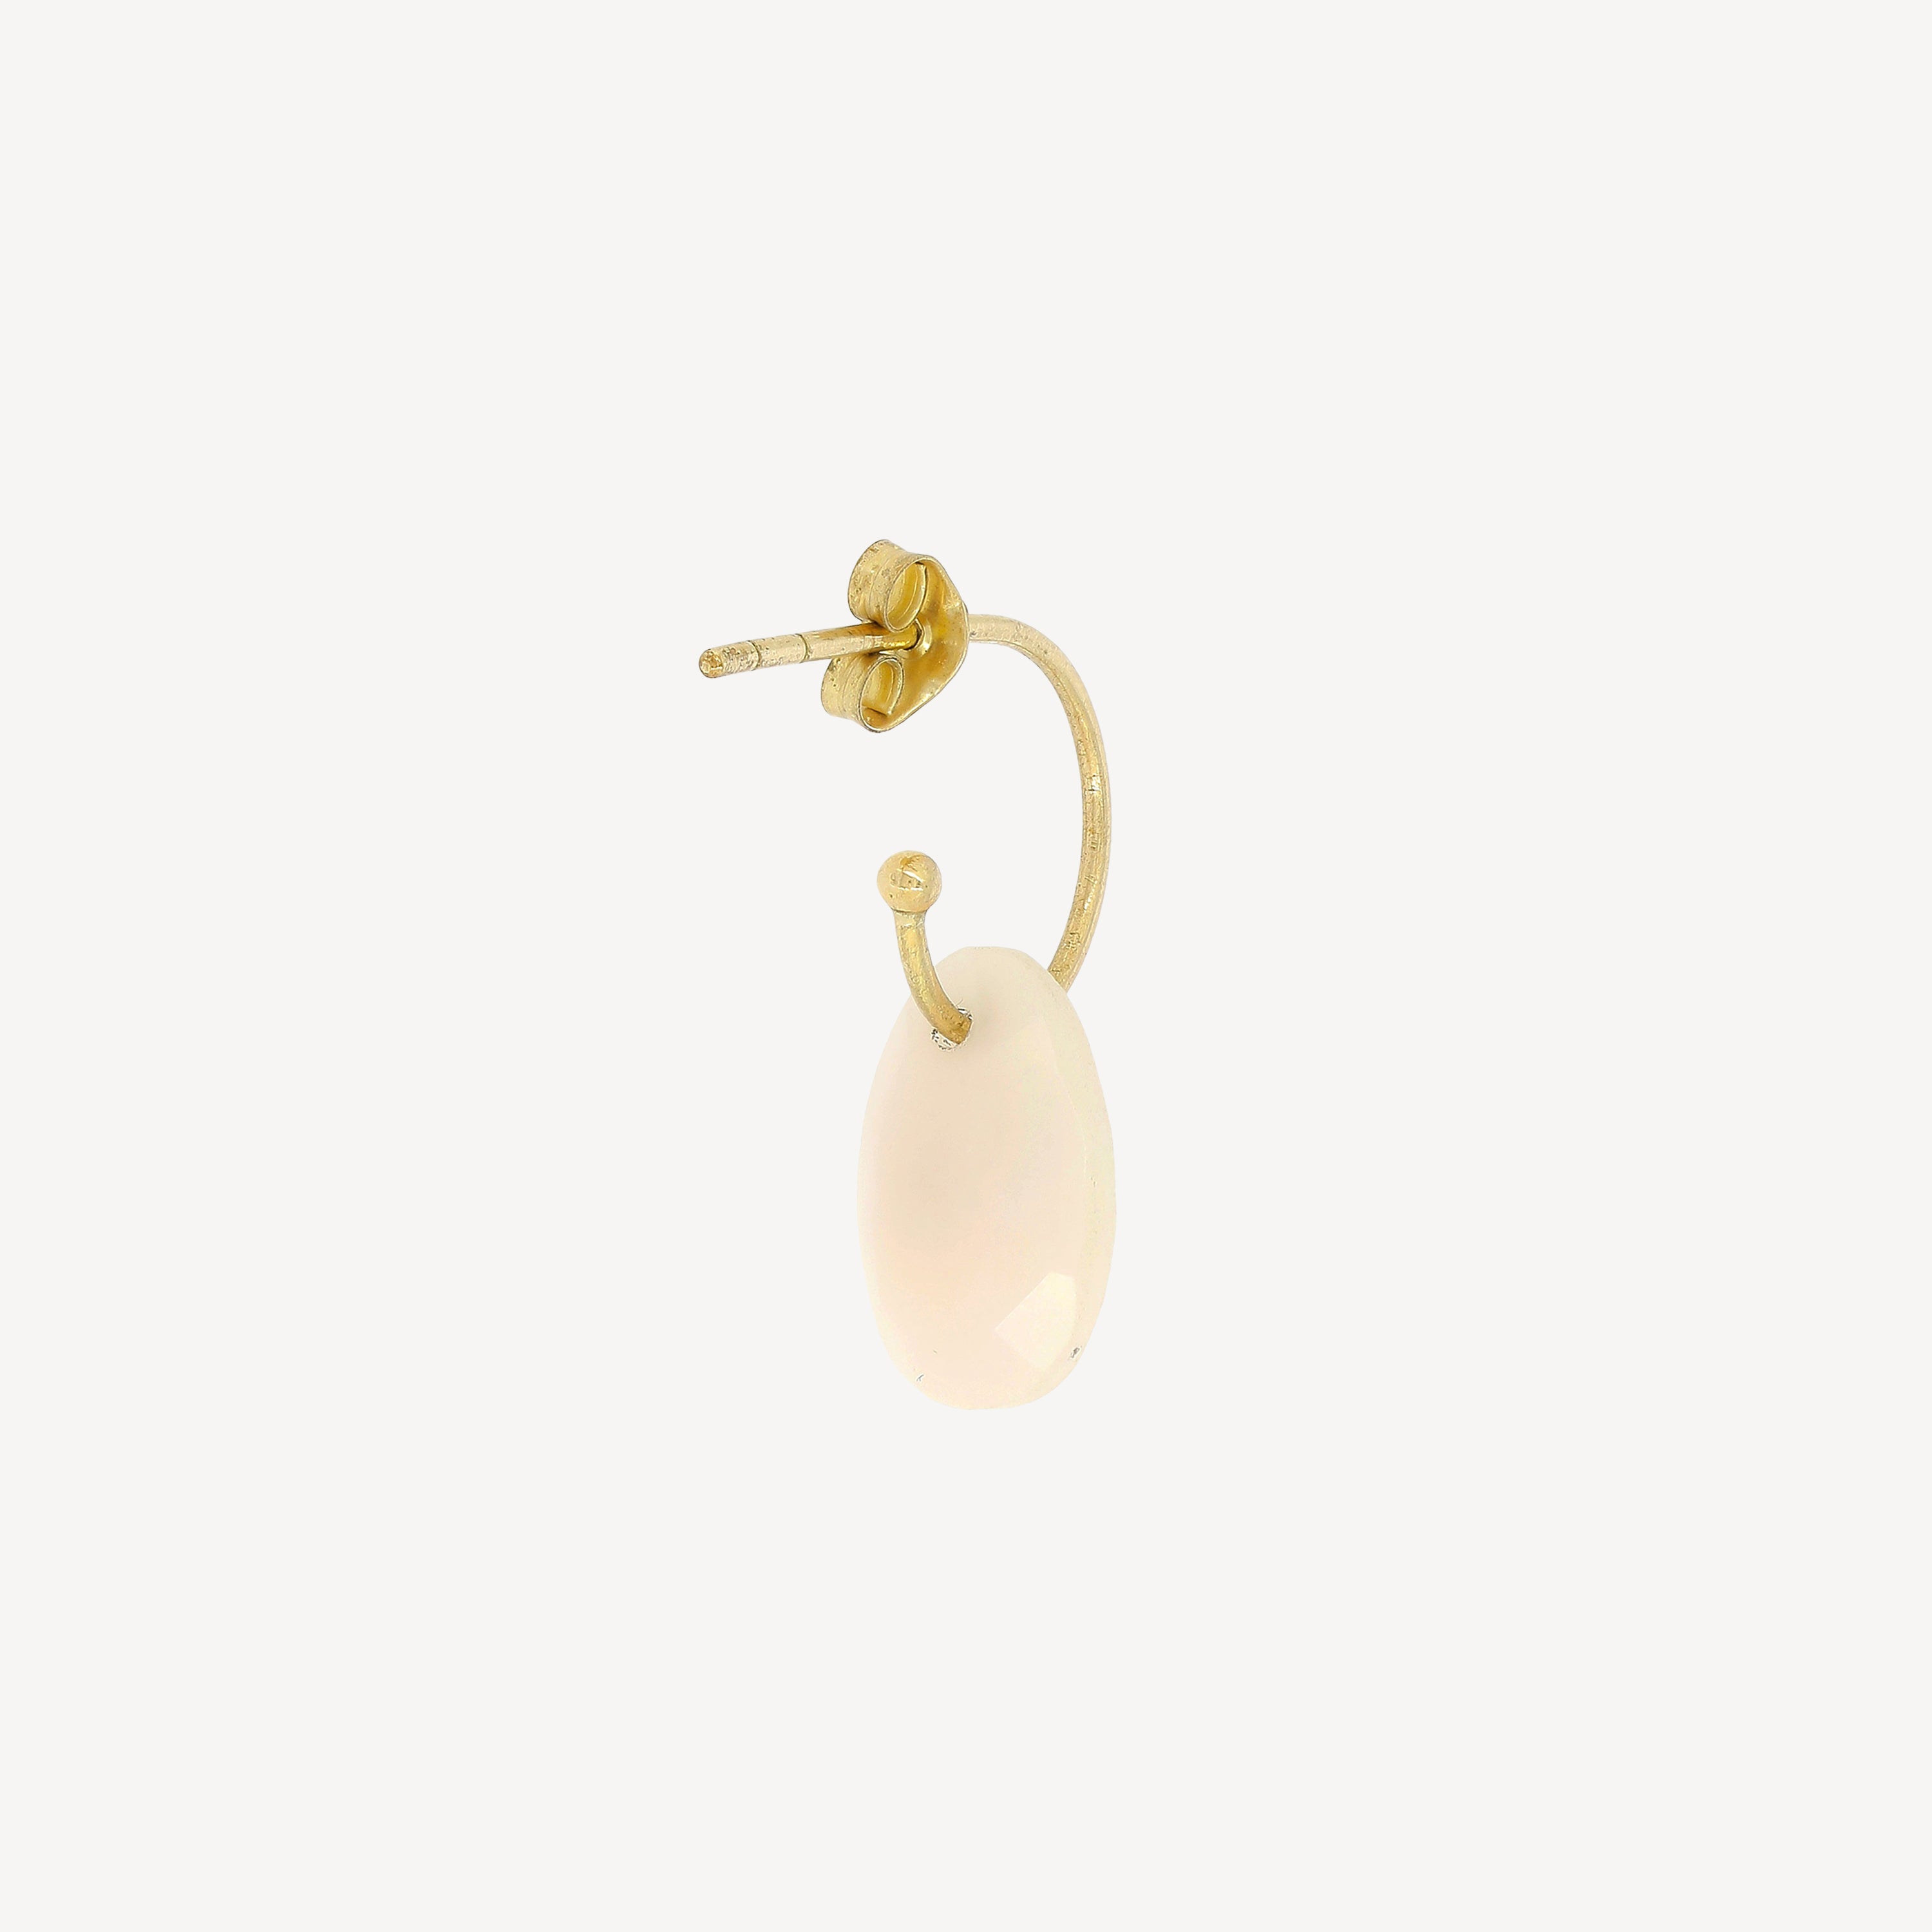 Opal earring